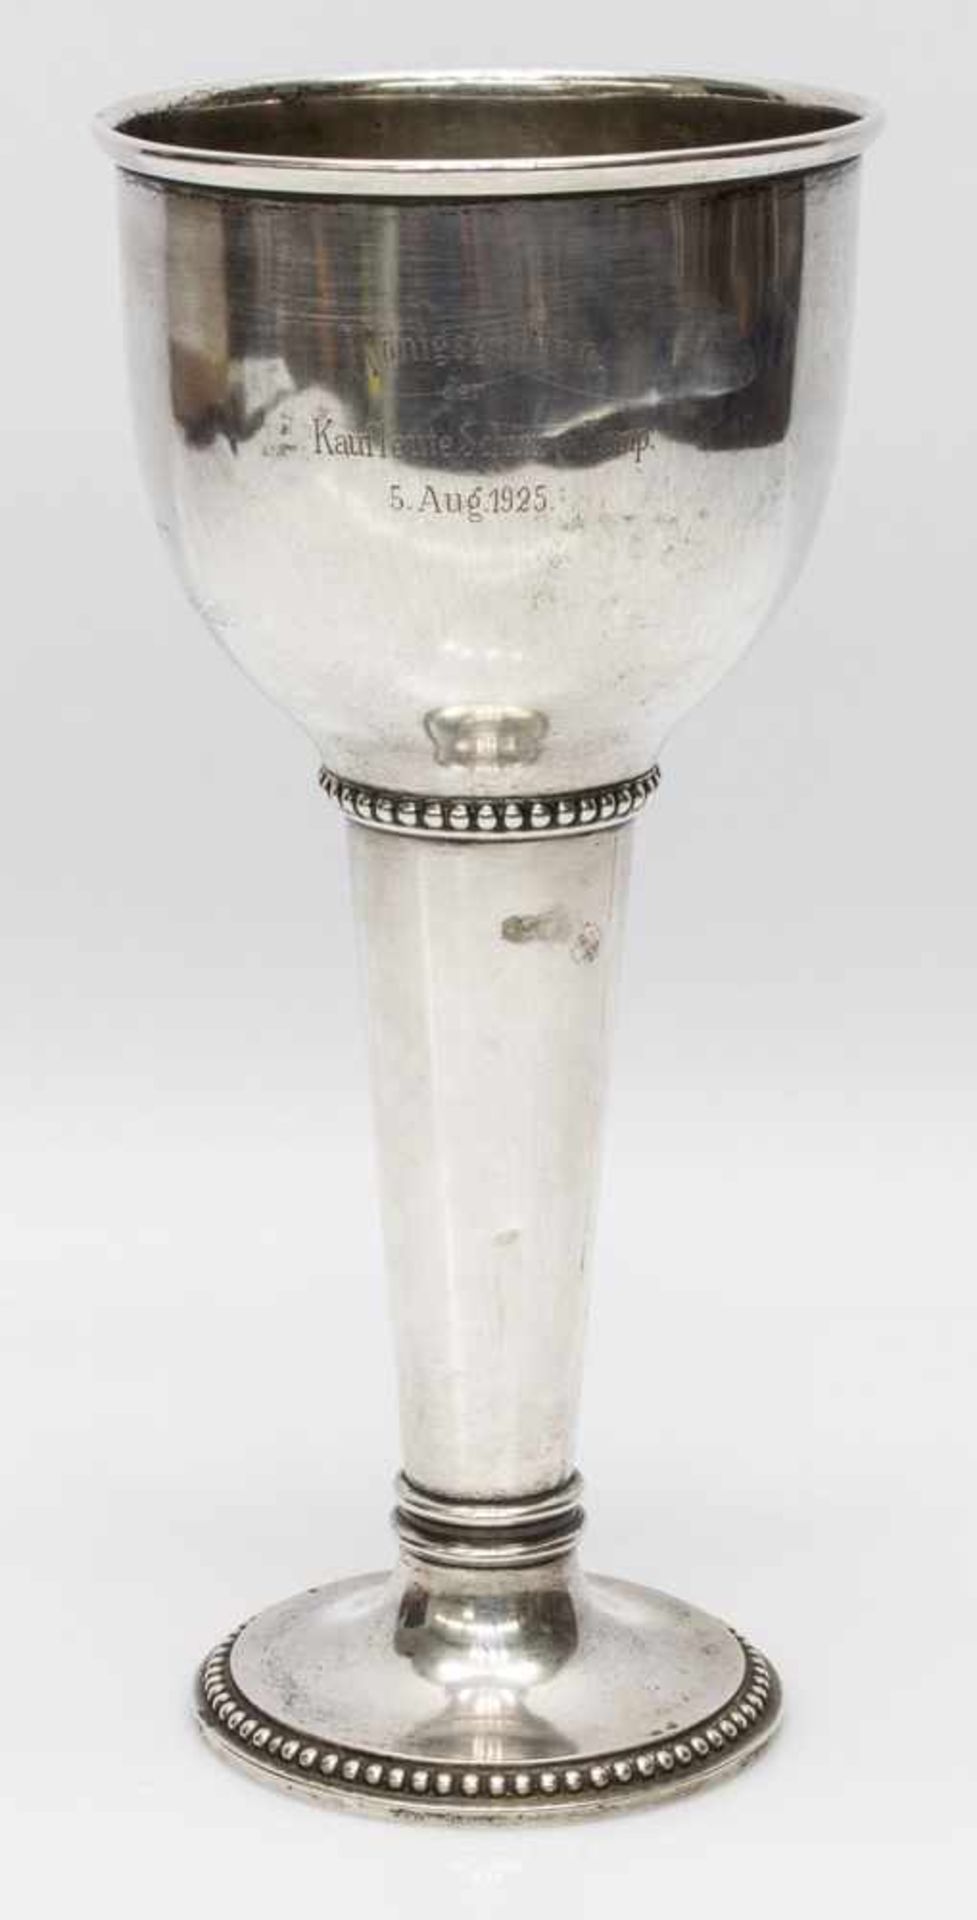 Schützen - PokalVorpommern um 1920er Jahre, 800er Silber mit Perlbanddekor, Inschrift "